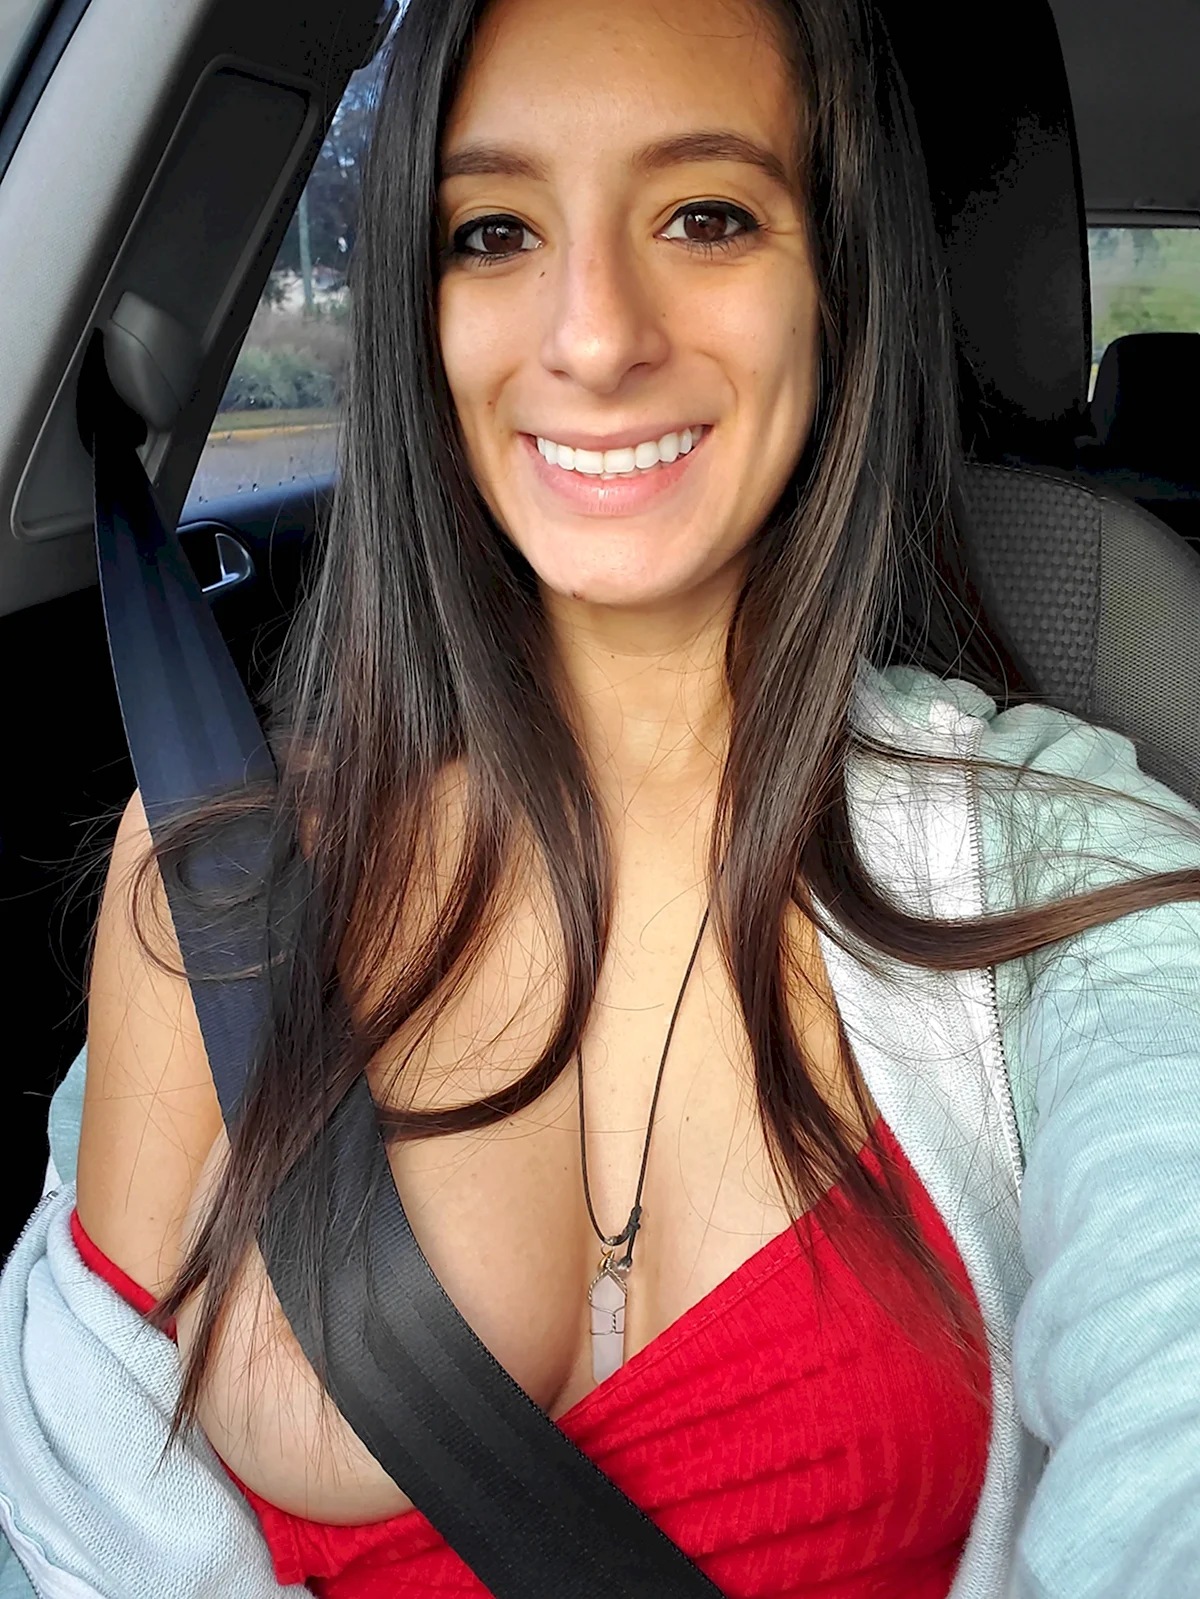 Titty selfie in cars